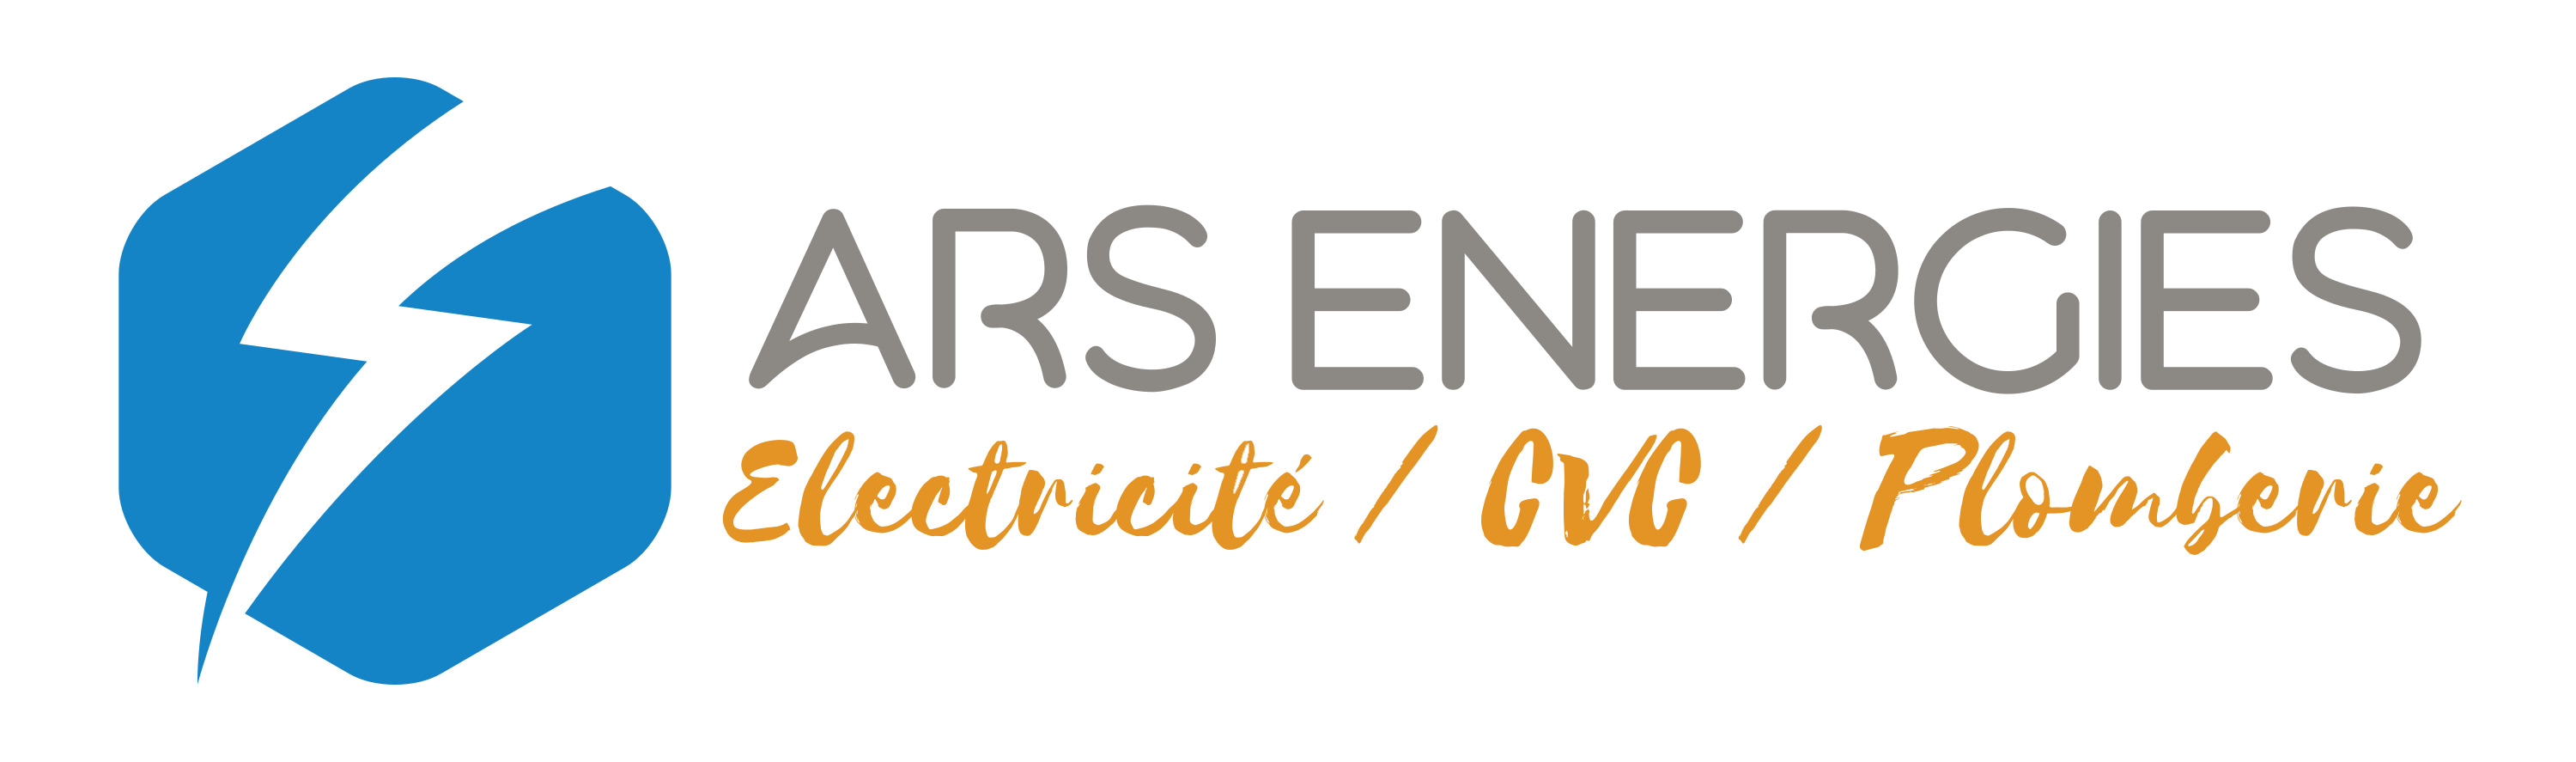 Ars Energies - Expert en travaux électriques, climatisation/chauffage & plomberie